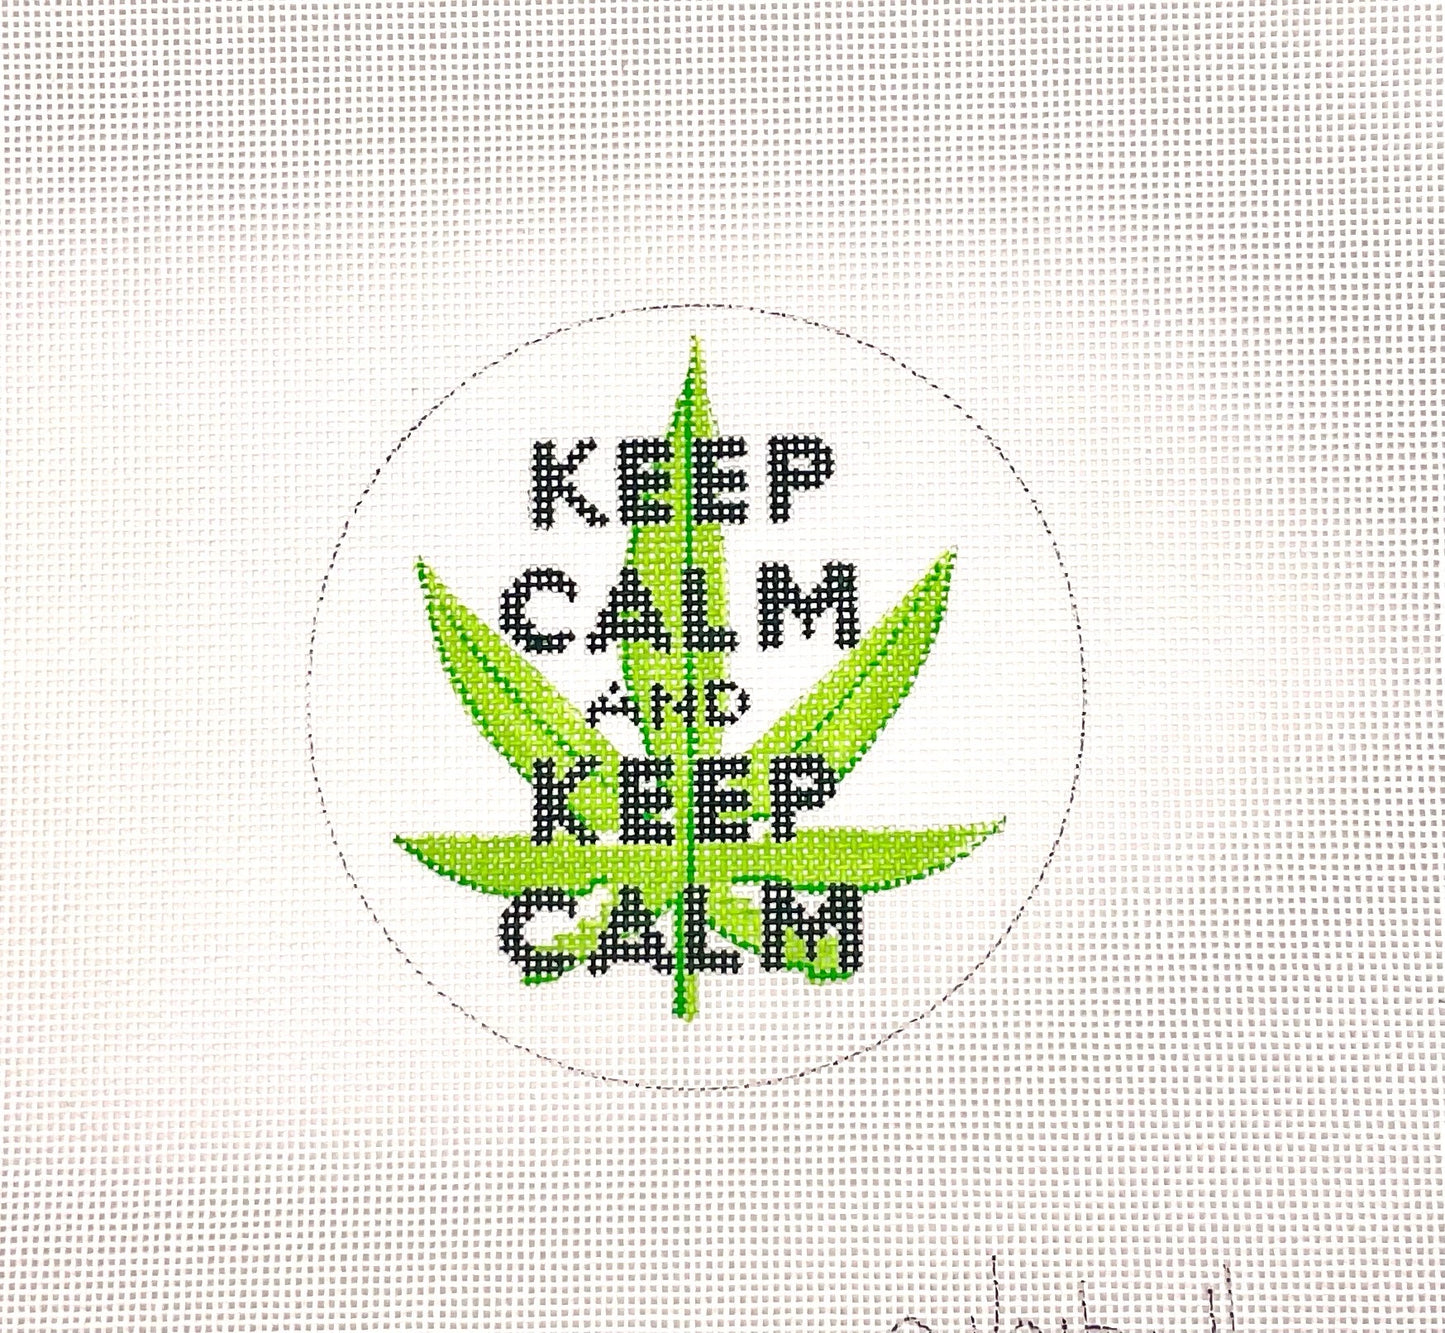 Keep Calm & Keep Calm